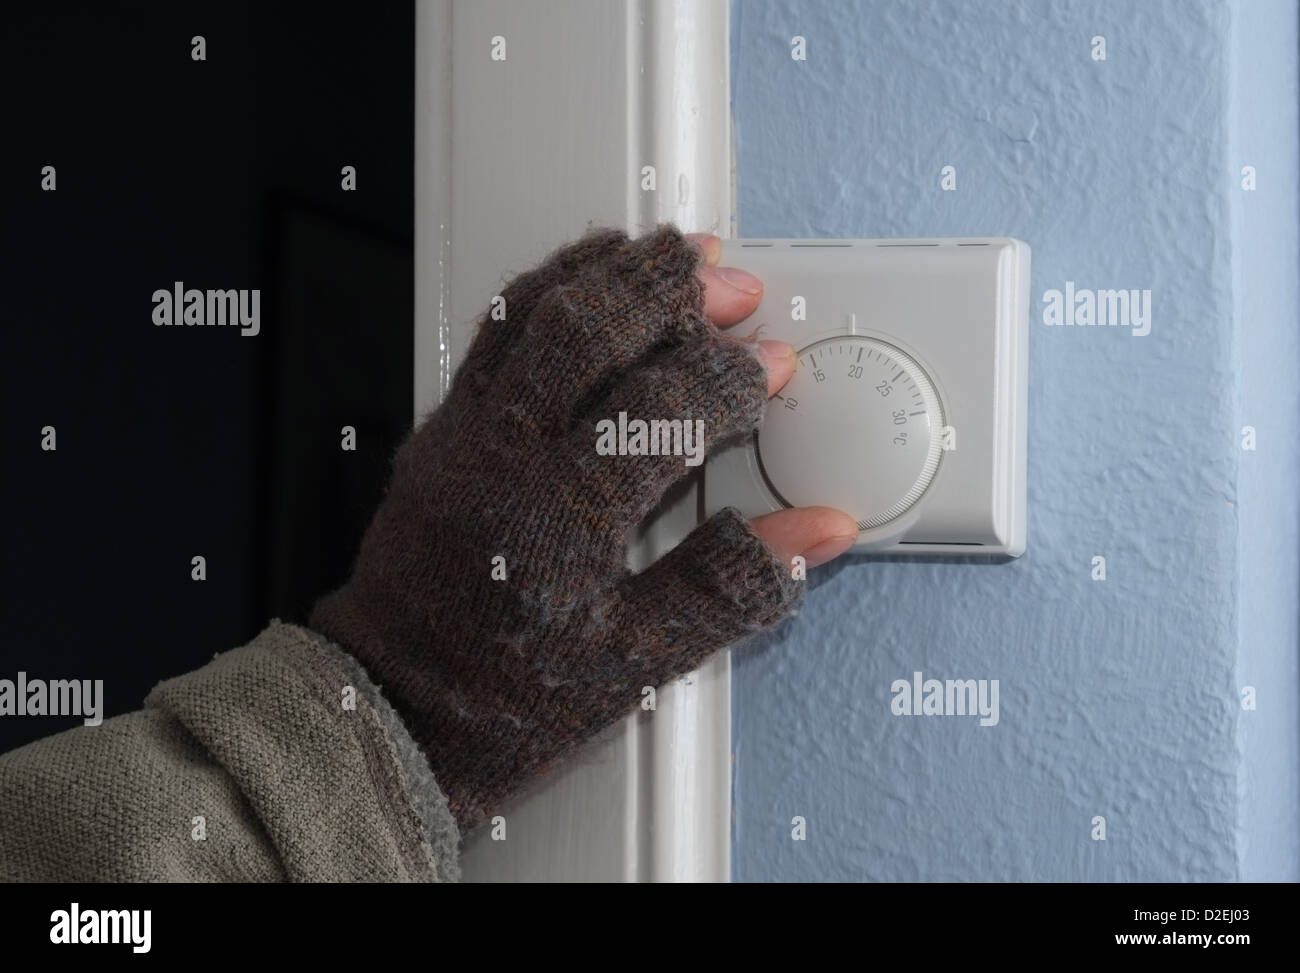 La austeridad - bajar la temperatura en el termostato de calefacción central doméstica Foto de stock